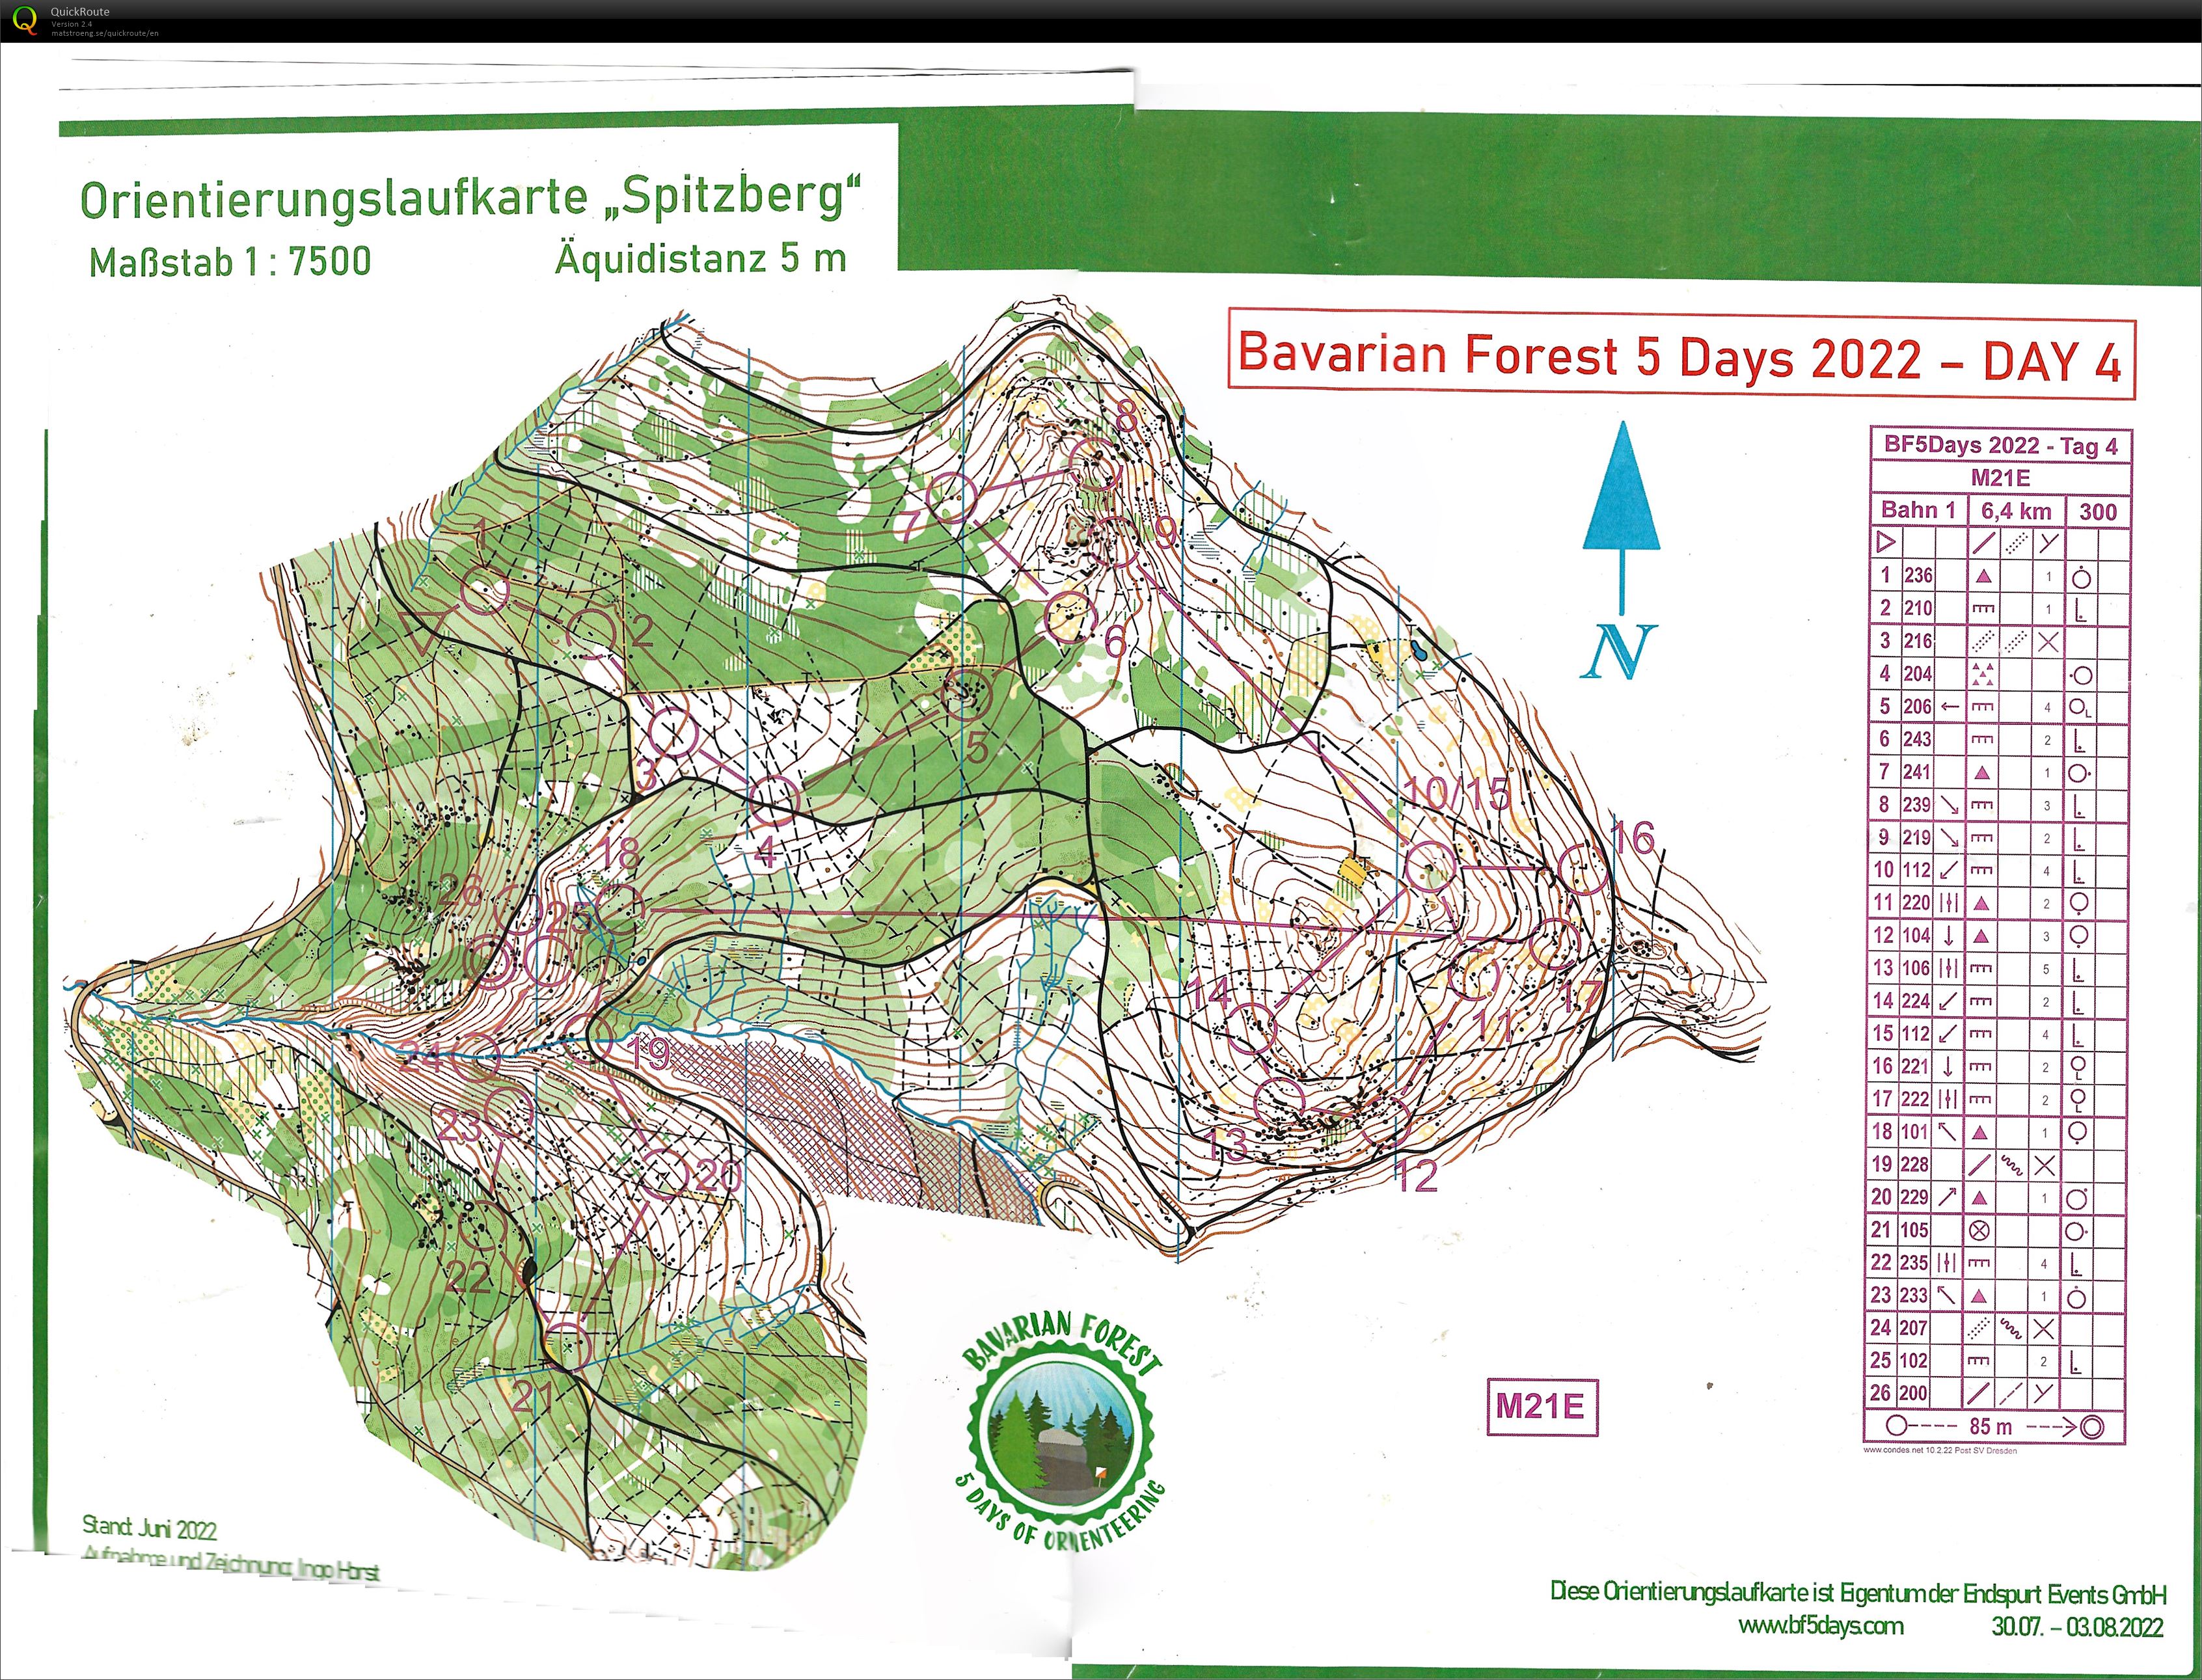 Bavarian forest 5 days E4 (02/08/2022)